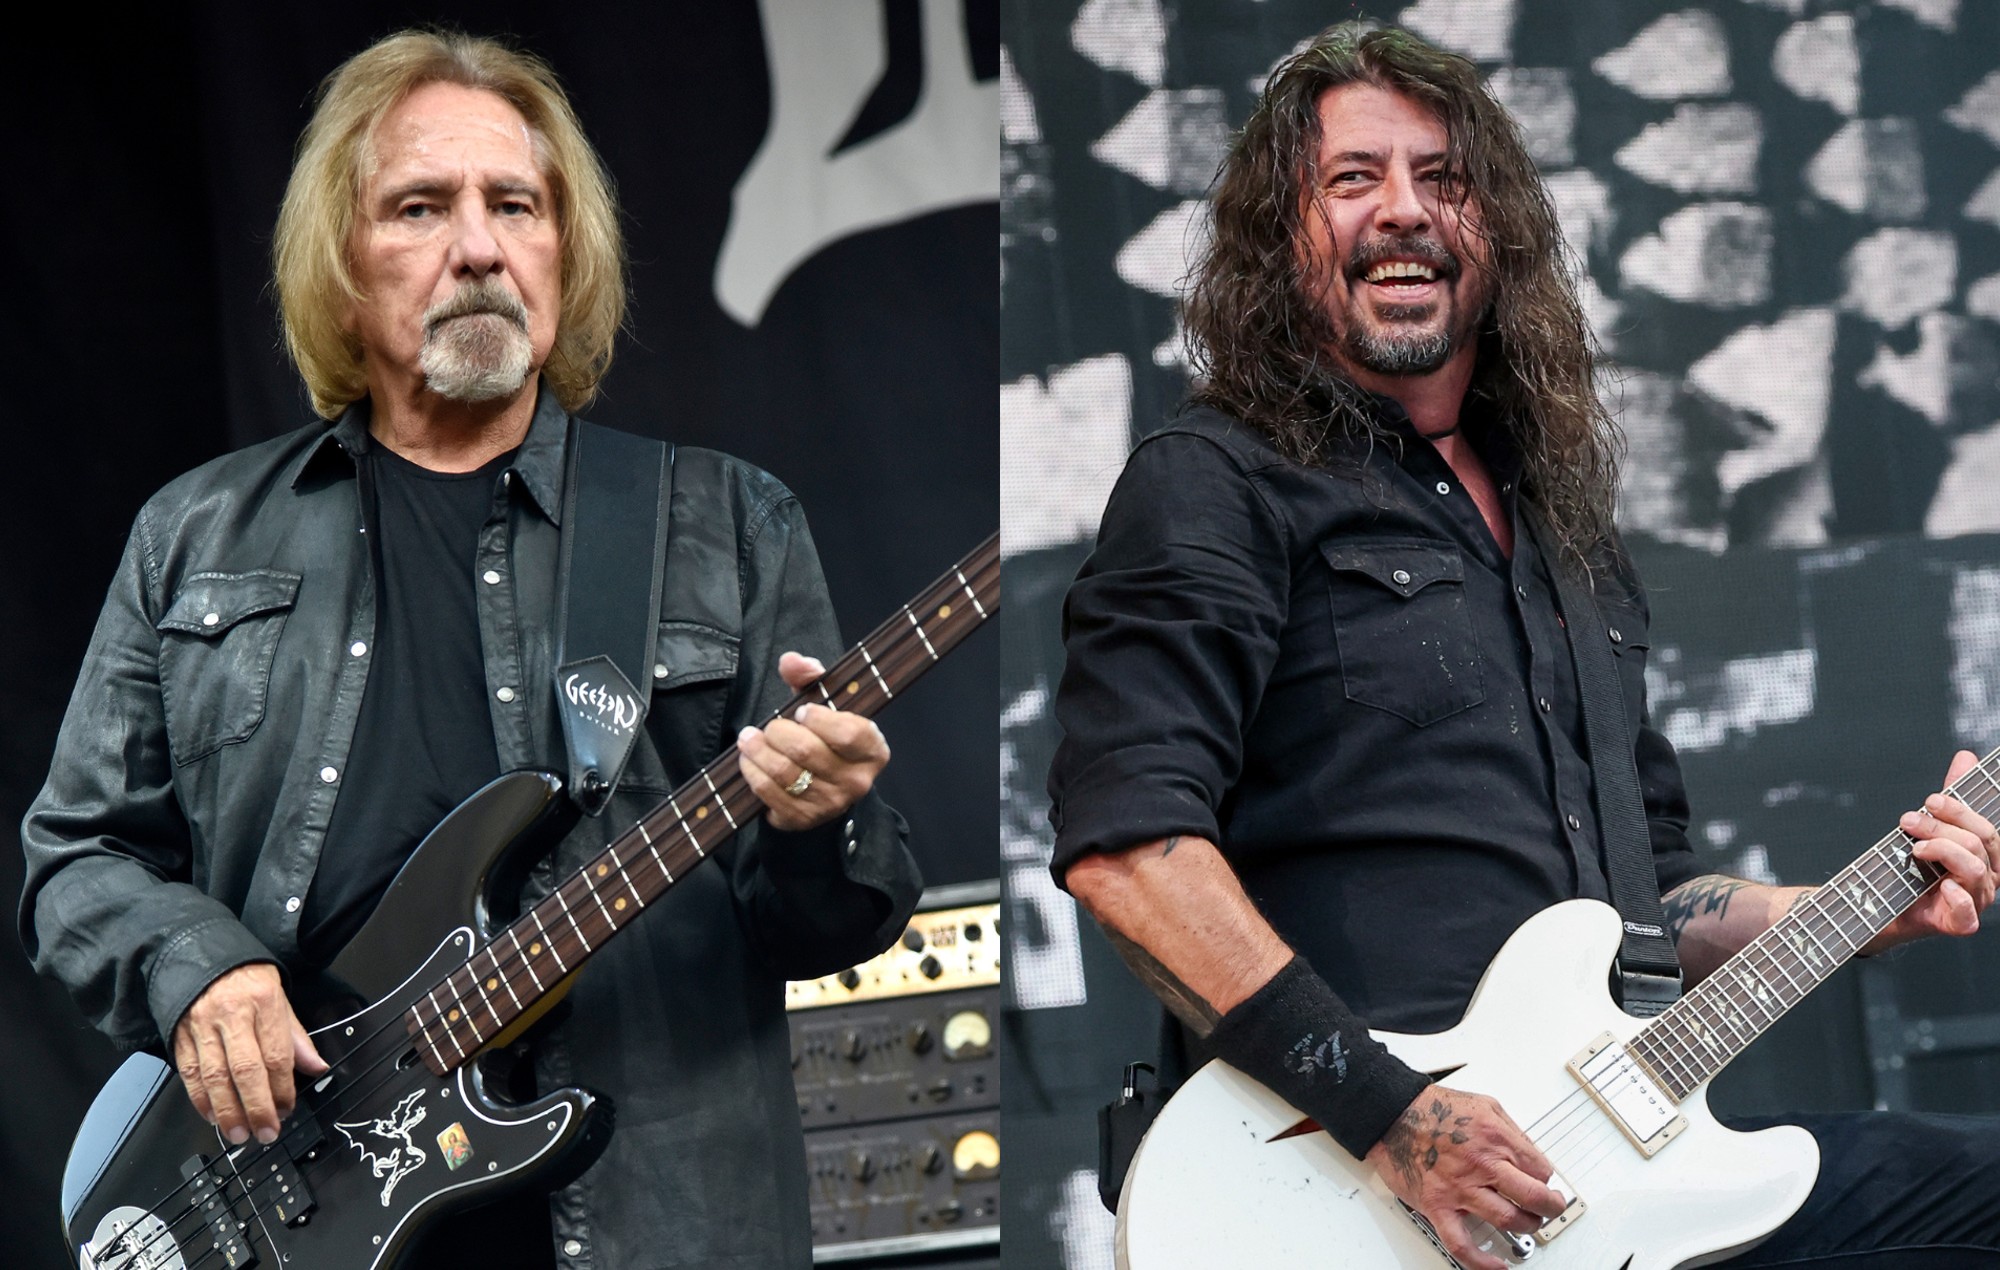 Watch Black Sabbath’s Geezer Butler join Foo Fighters for ‘Paranoid’ in Birmingham